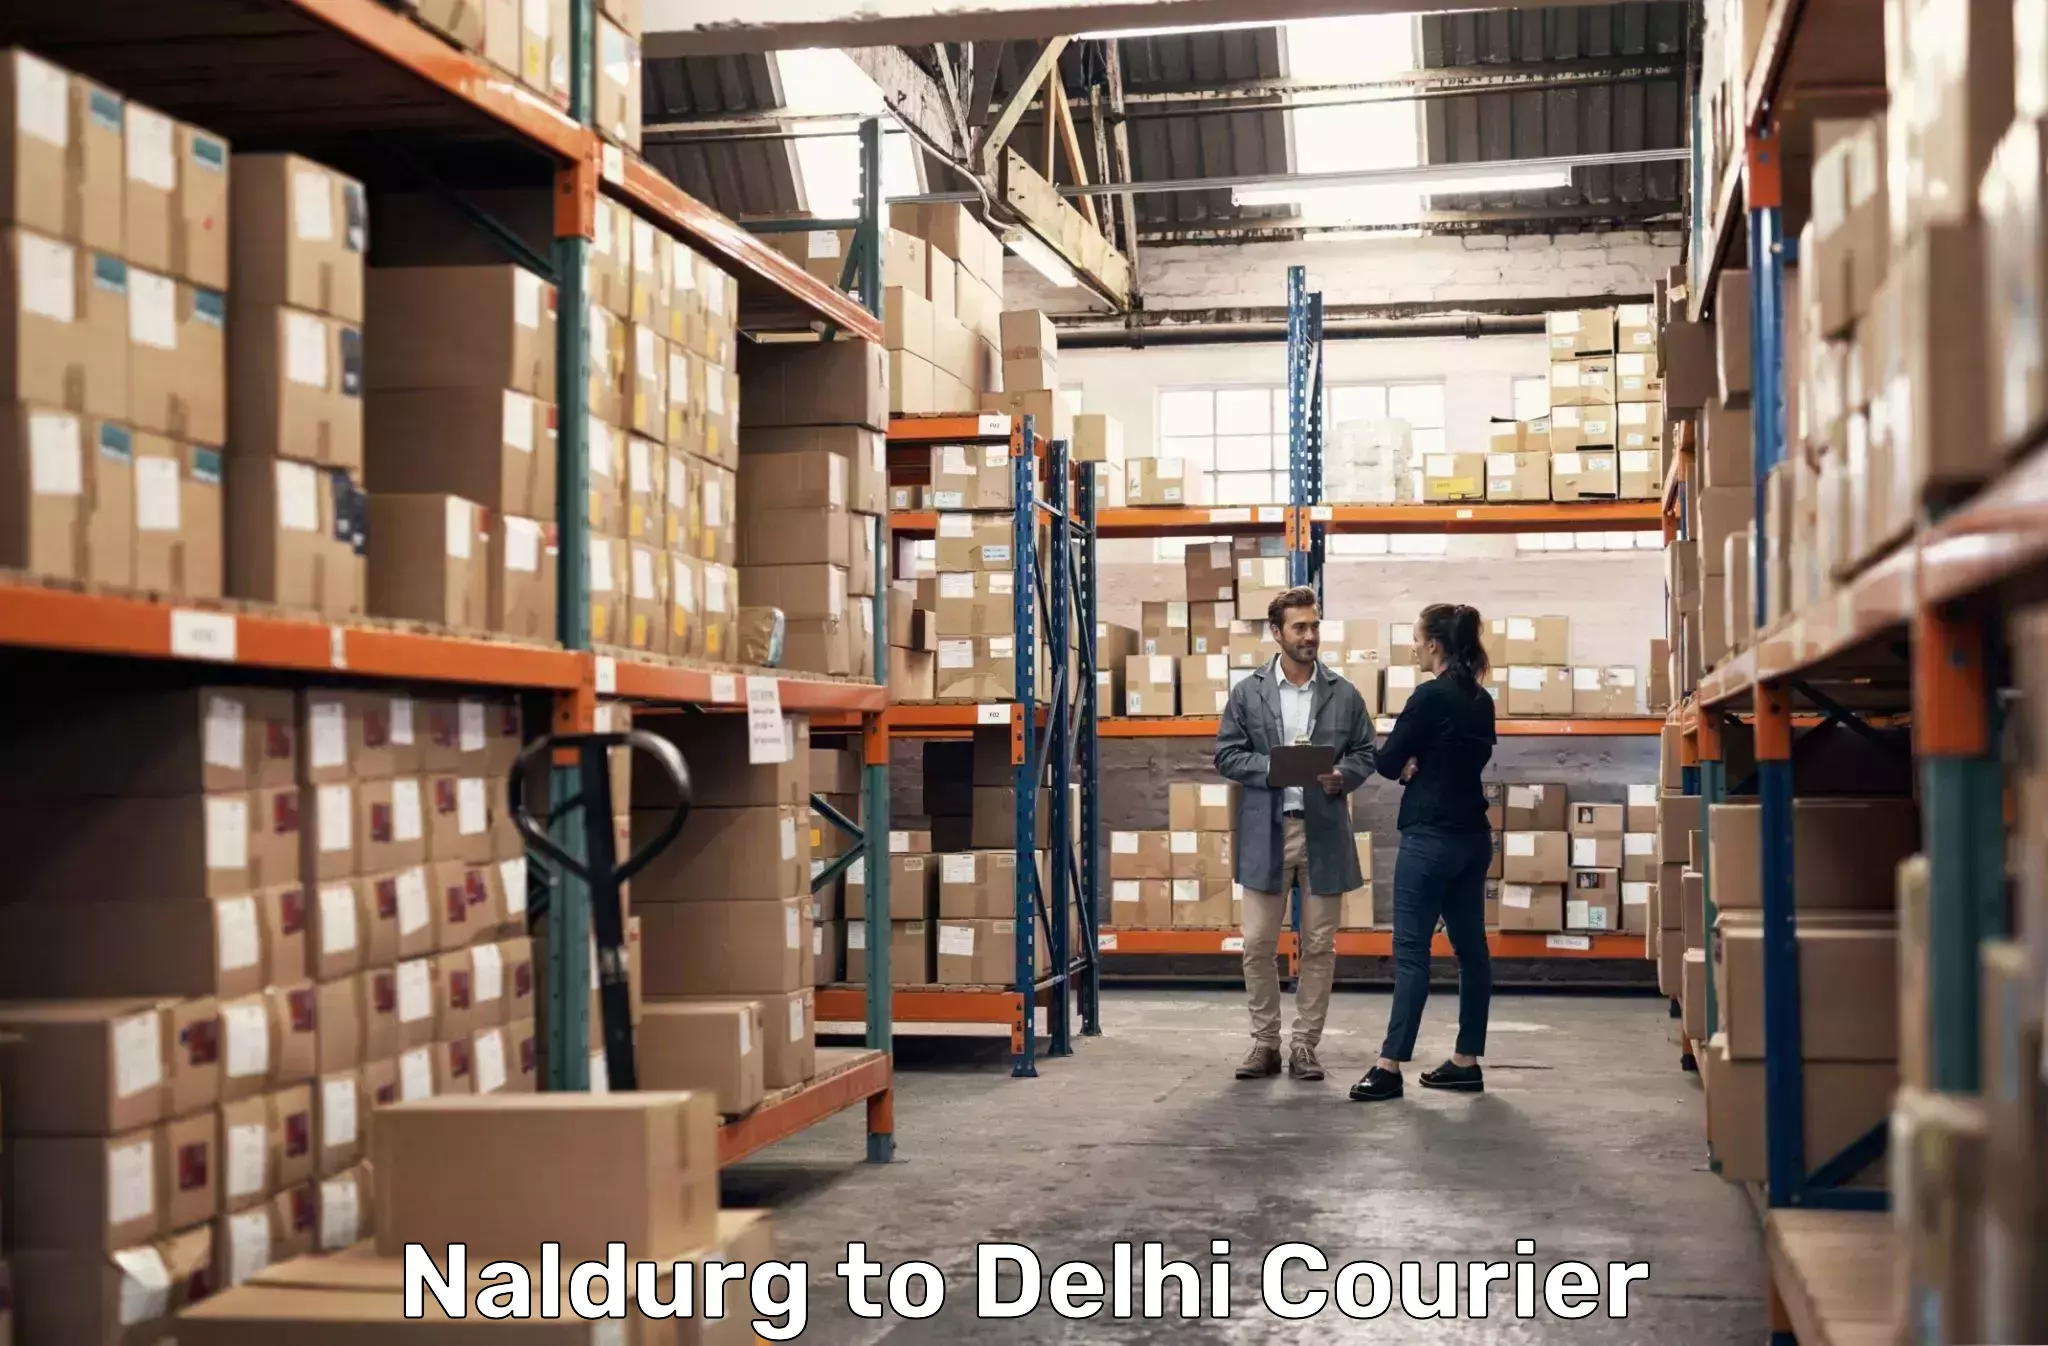 Courier service comparison Naldurg to Delhi Technological University DTU